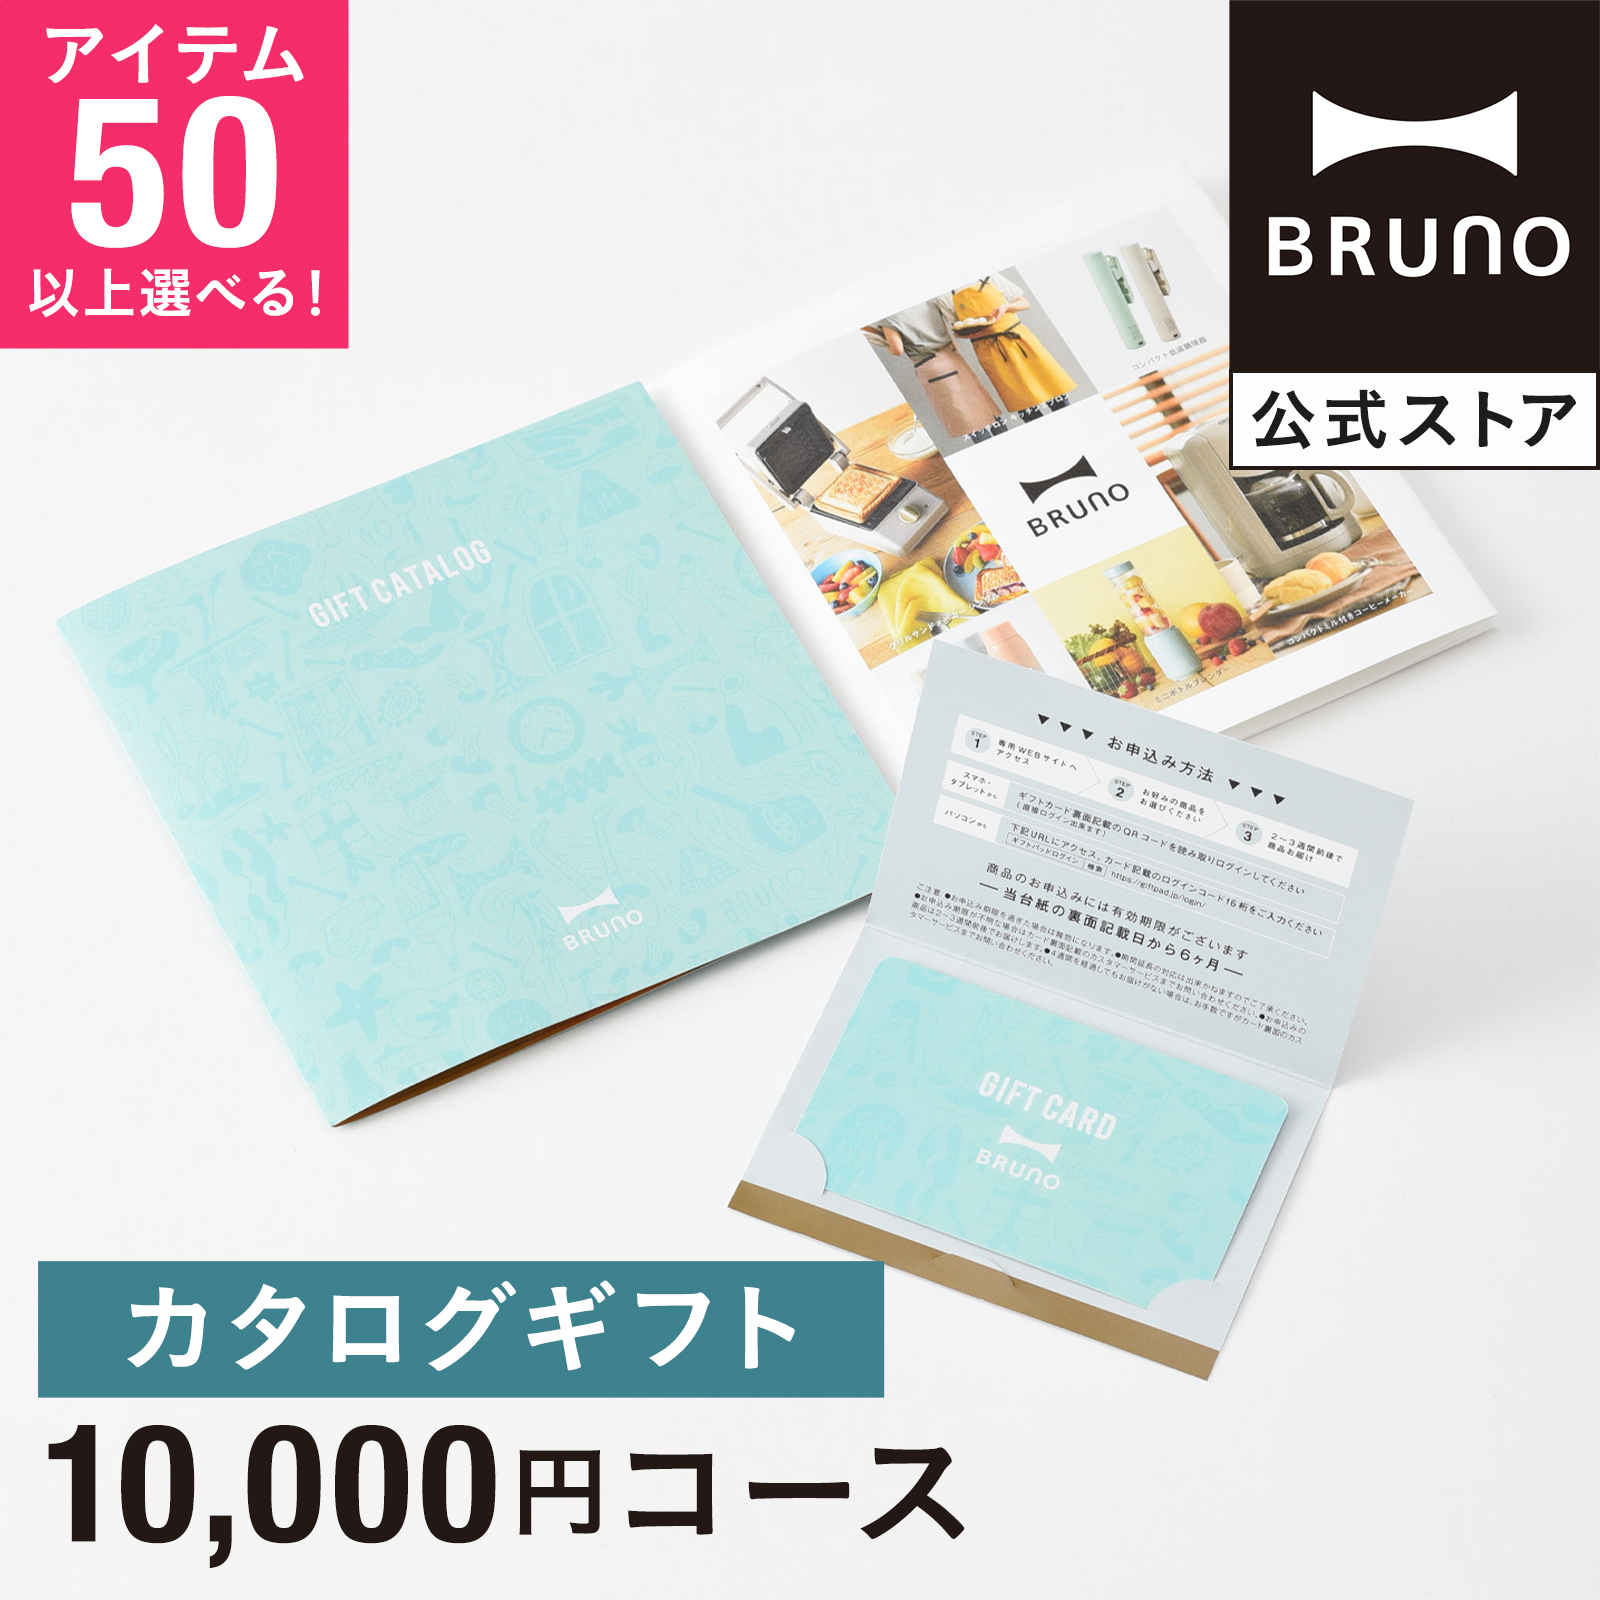 【楽天市場】カタログギフト ブルーノ レモンイエロー 1万5000円 